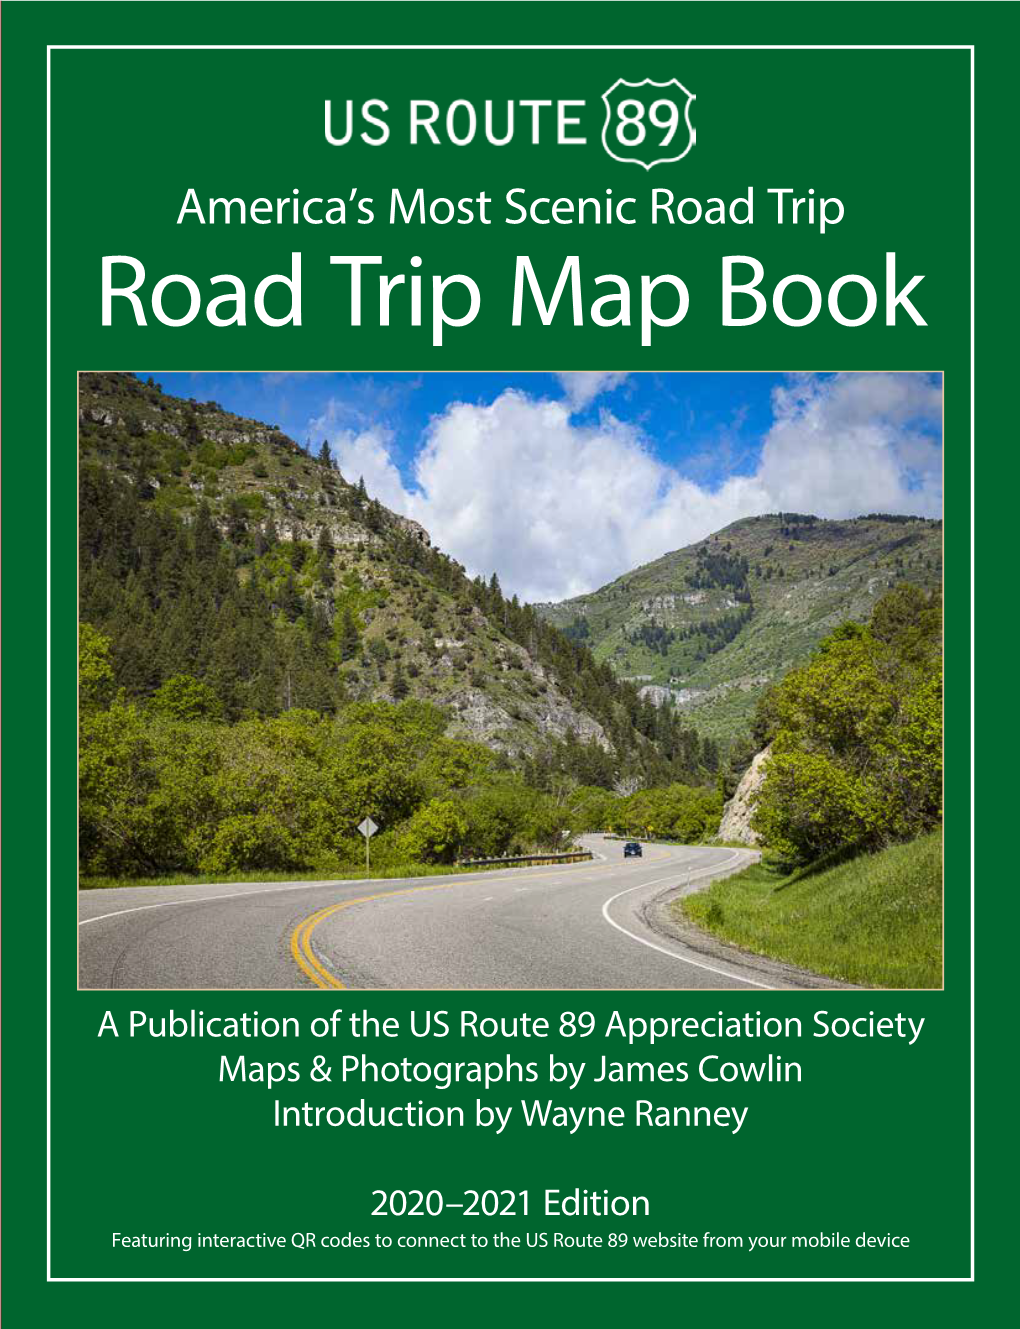 Road Trip Map Book